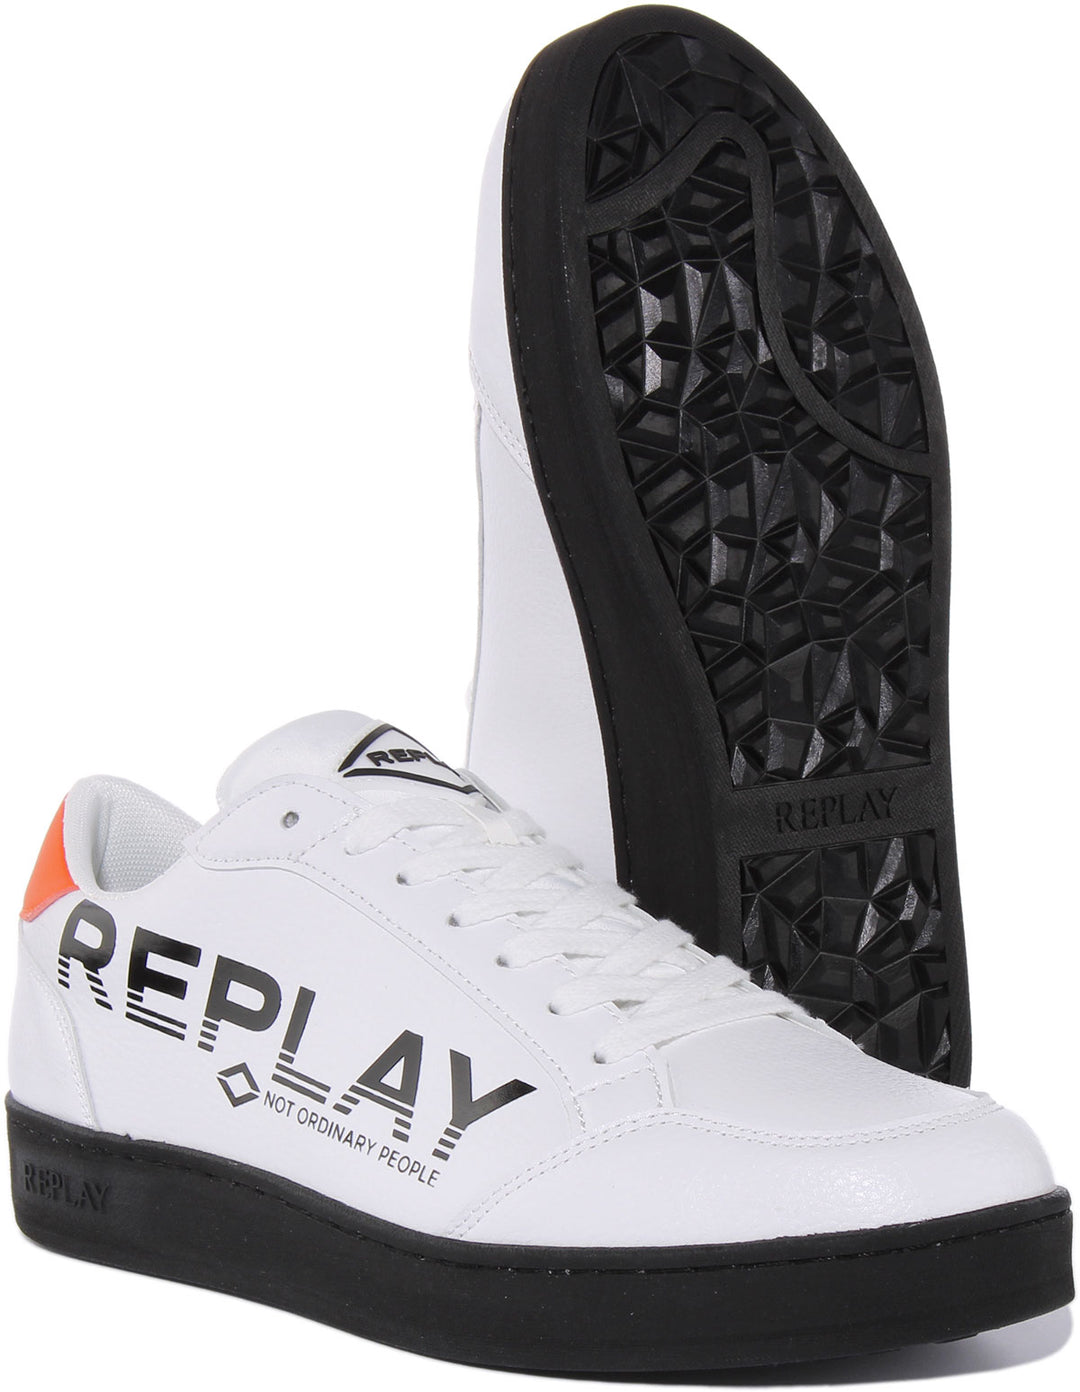 Replay Bring Print Baskets synthétiques à lacets pour hommes en blanc noir